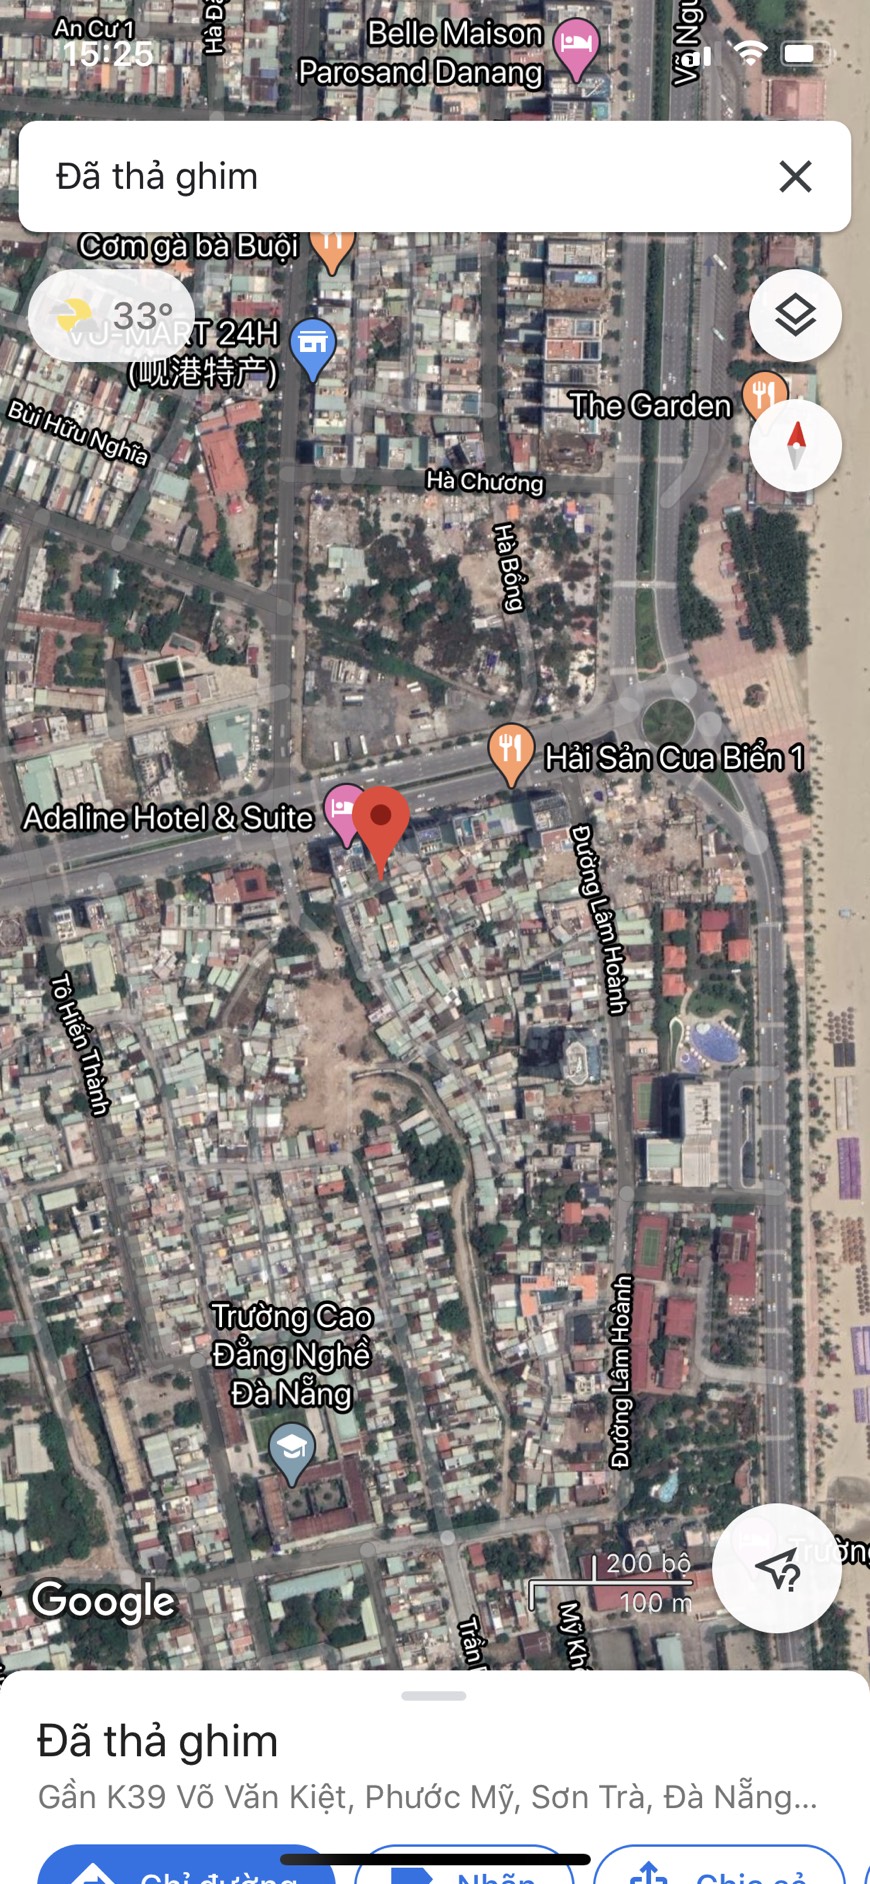 Bán đất kiệt 39 đường Võ Văn Kiệt,Đà Nẵng cách đường chính 20 m,cách biển 100 m Giá rẻ .LH :0905606910